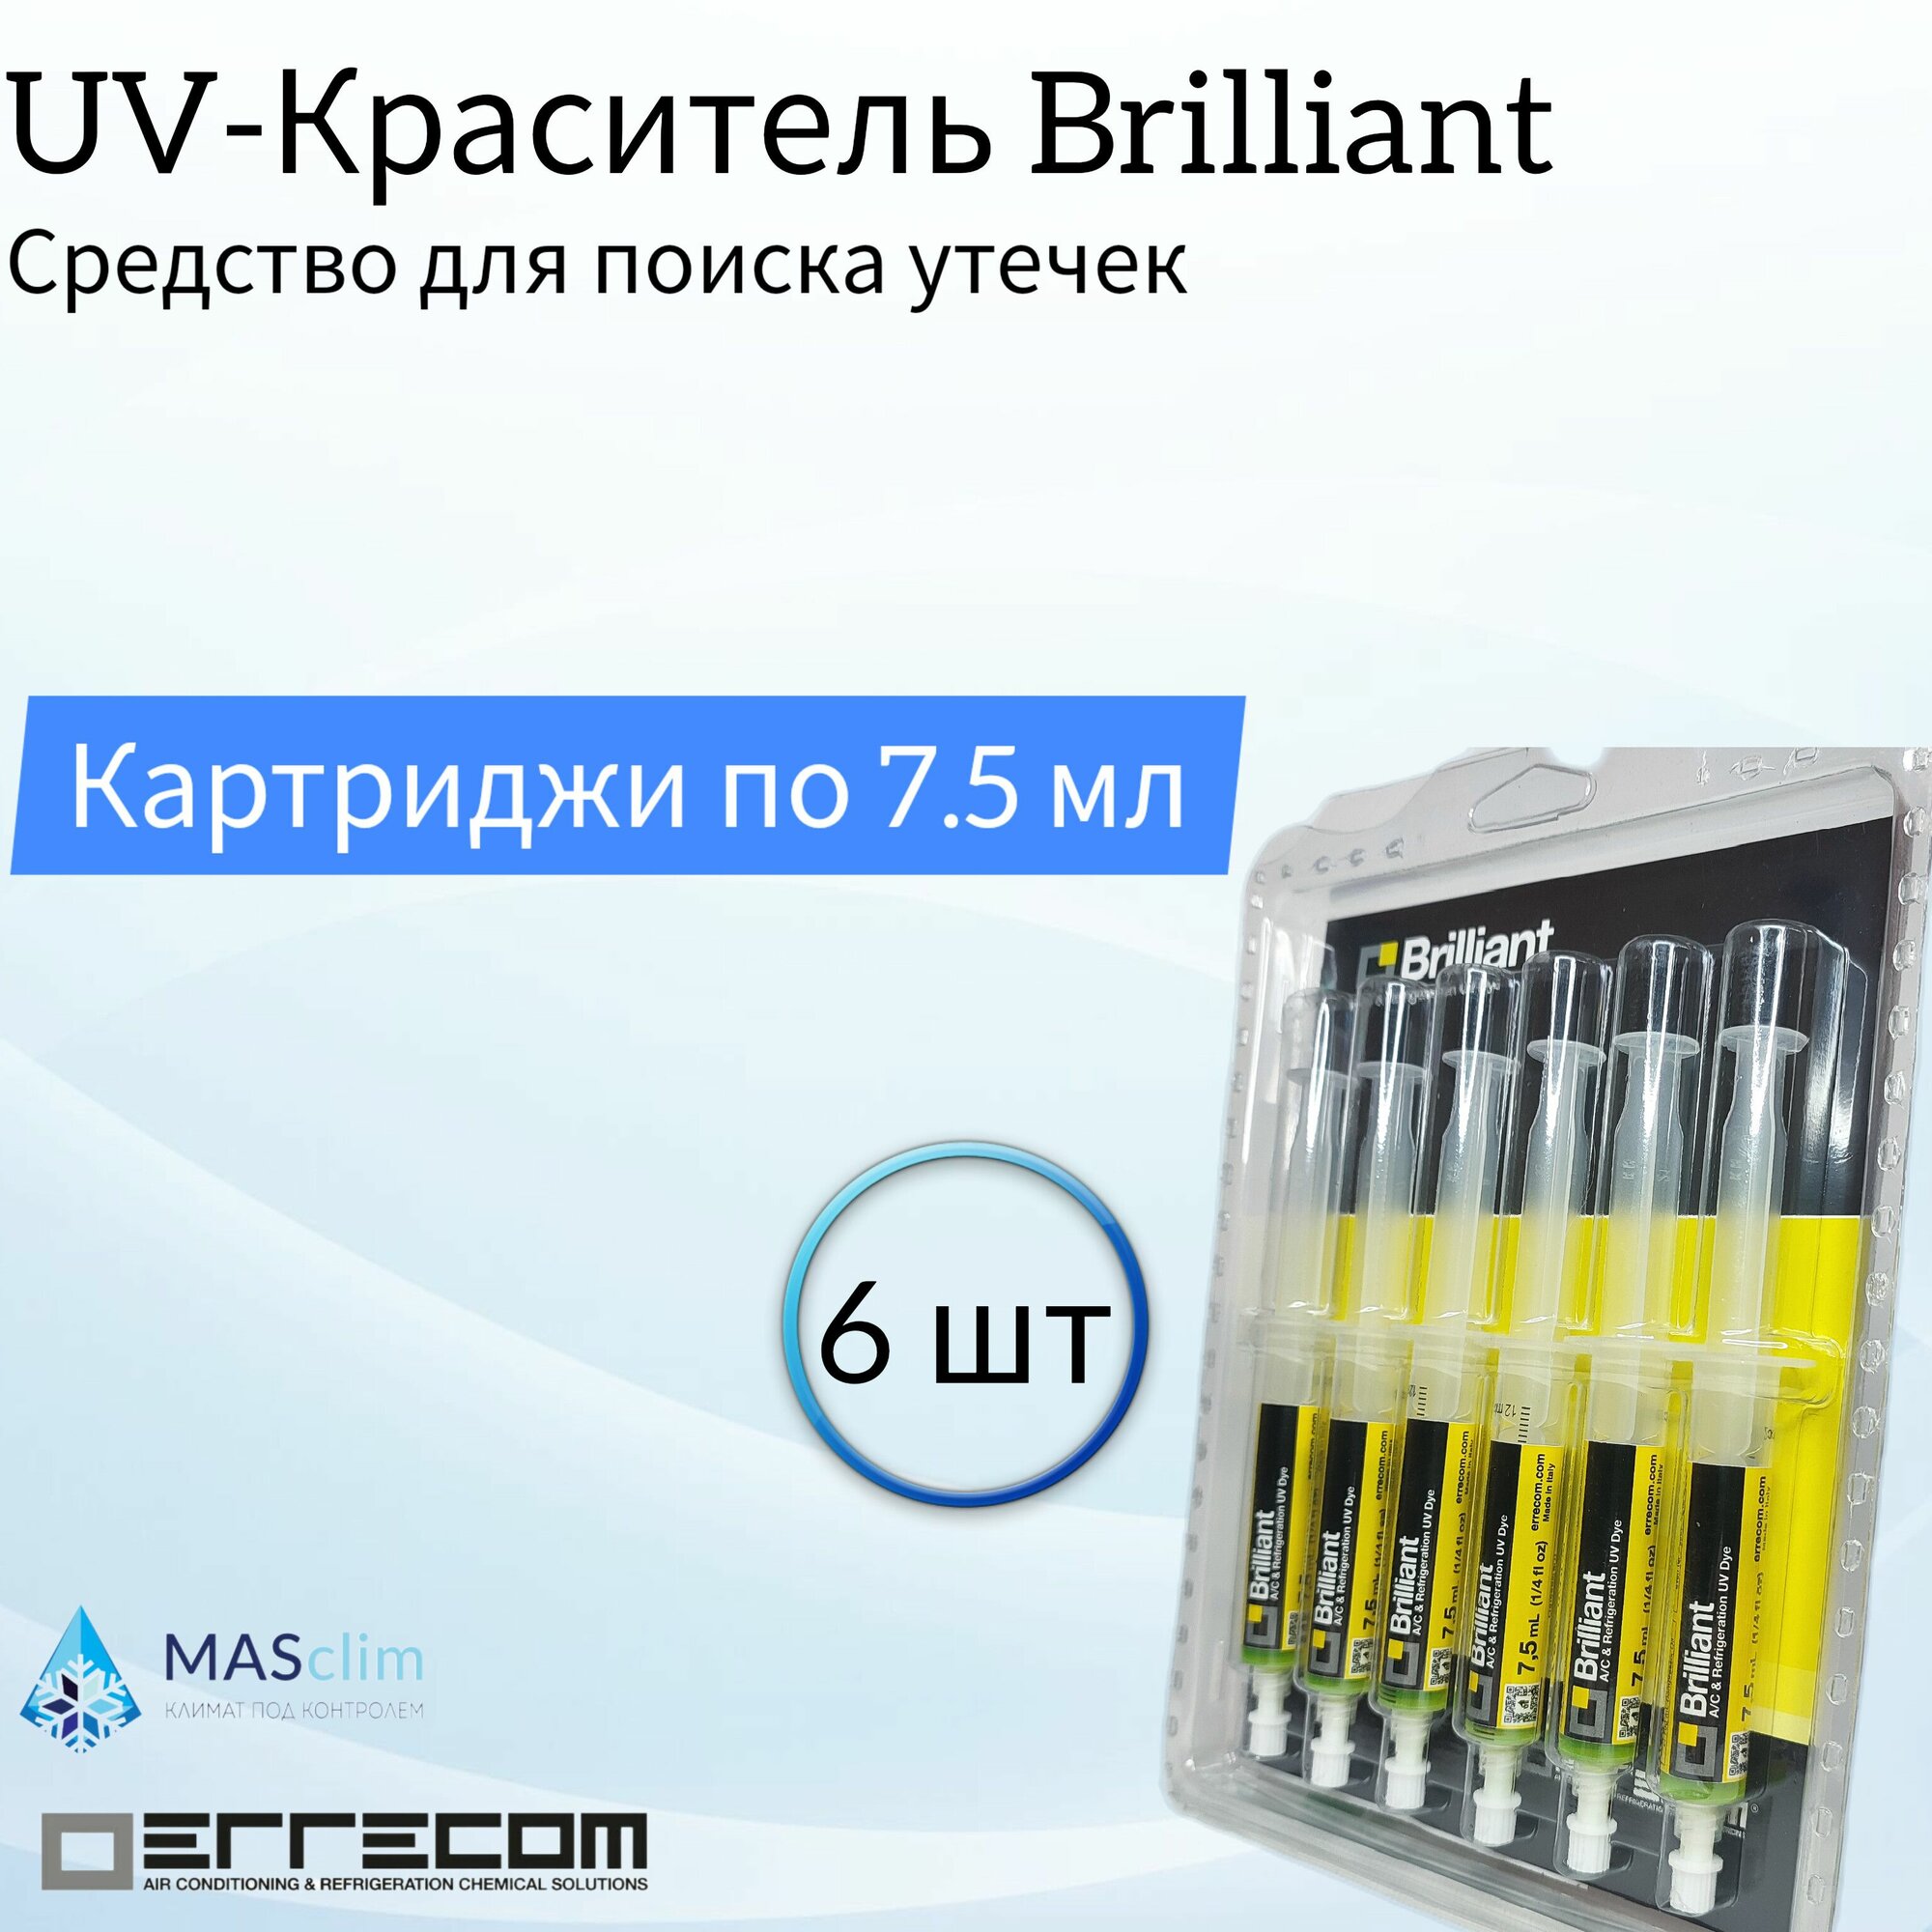 Средство для поиска утечек Errecom UV-краситель 6 картриджей по 7.5 мл с гибким адаптером для R134a (TR1058. A6. H2) / Для кондиционеров